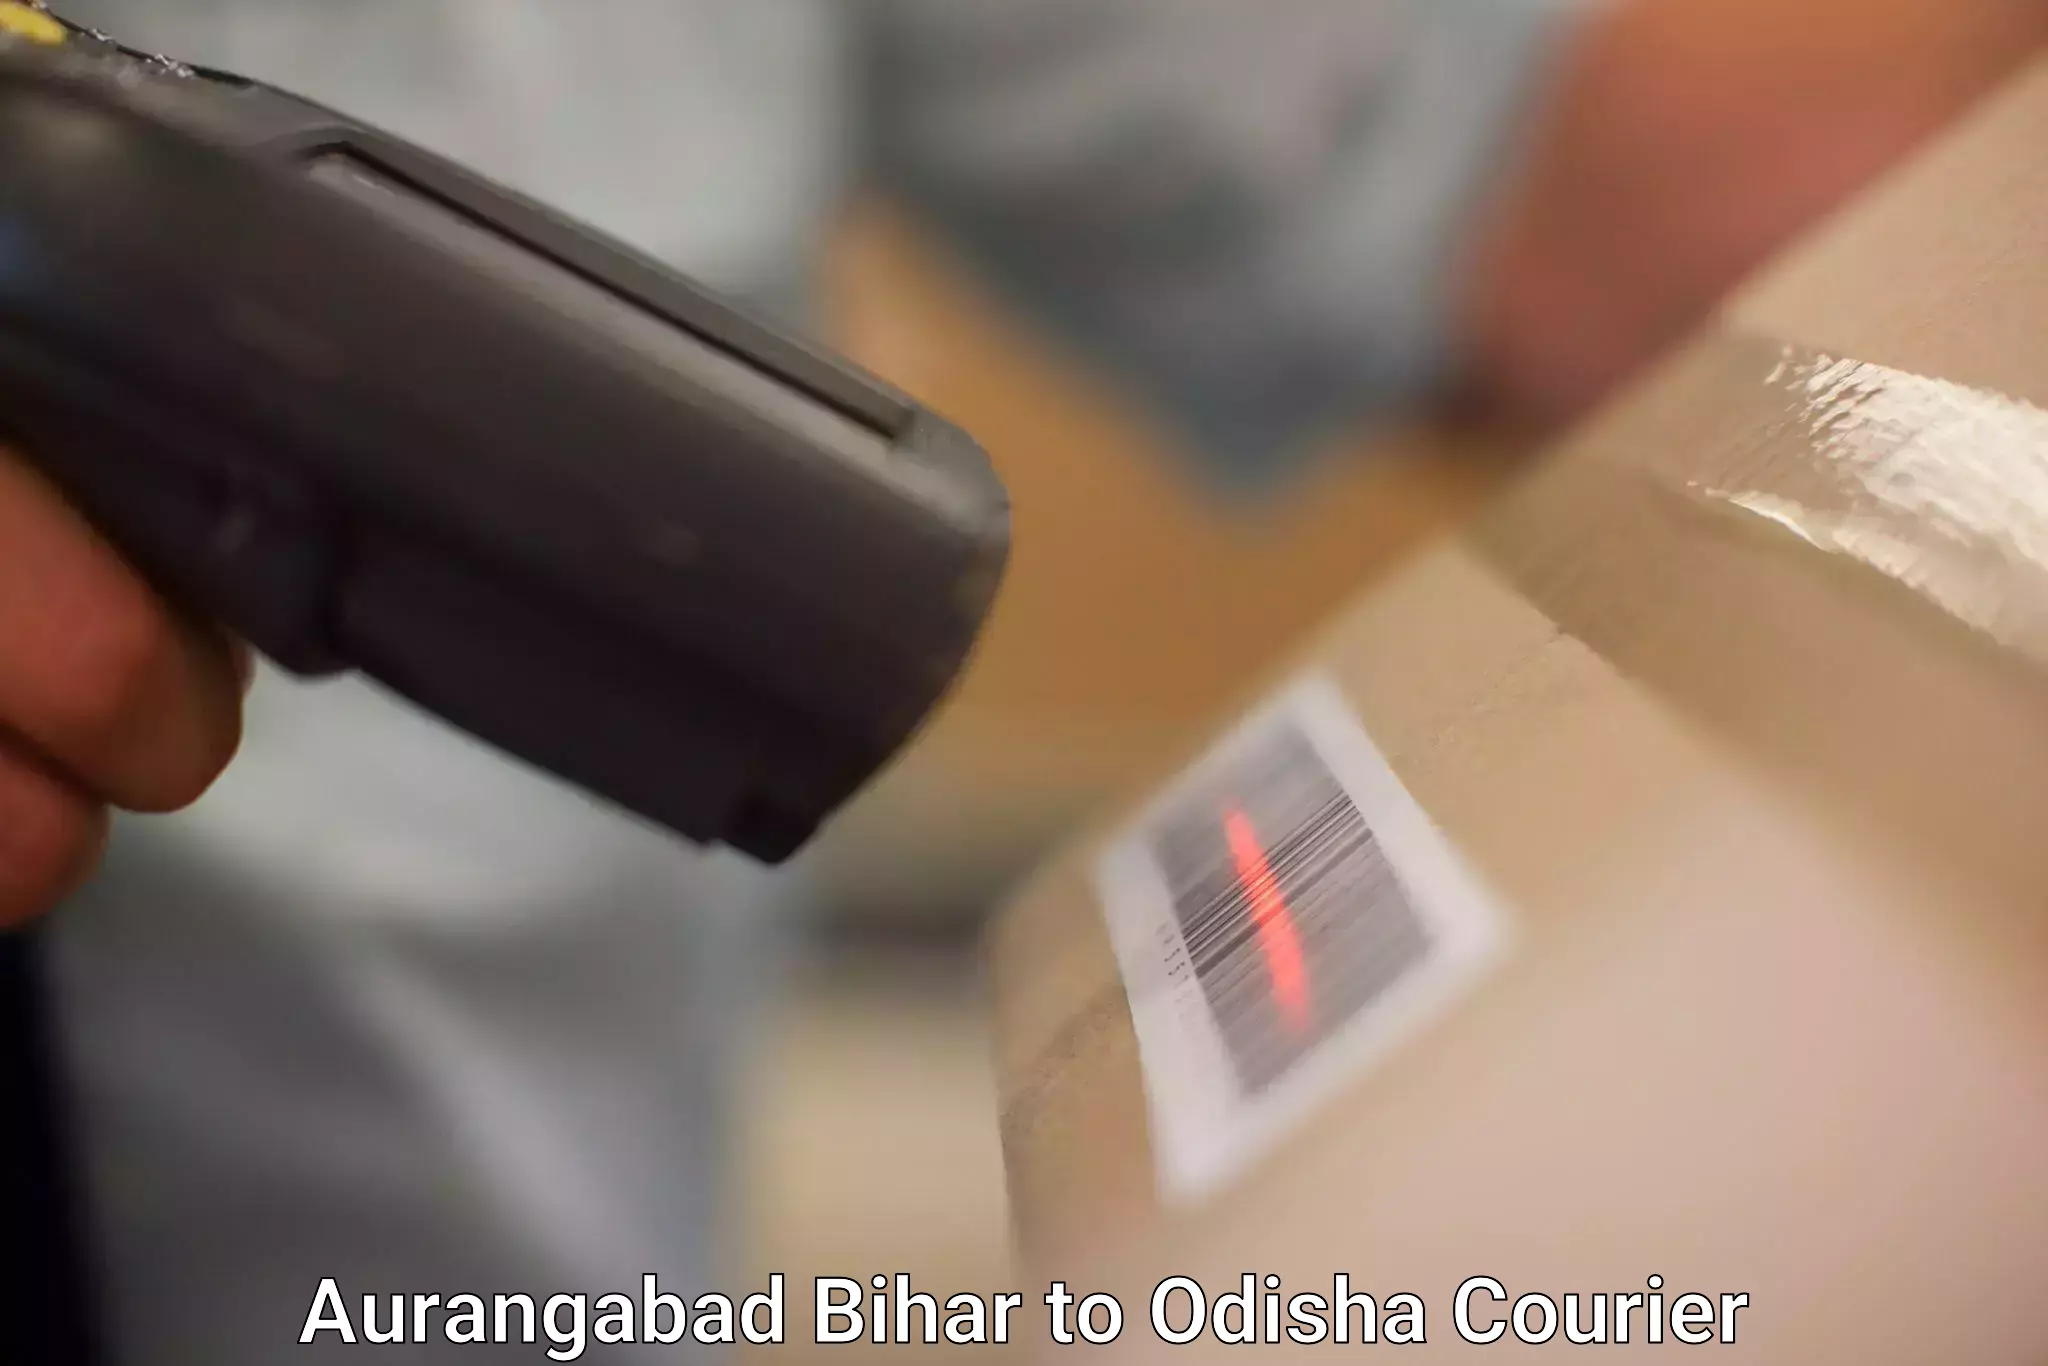 Special handling courier Aurangabad Bihar to Baleswar